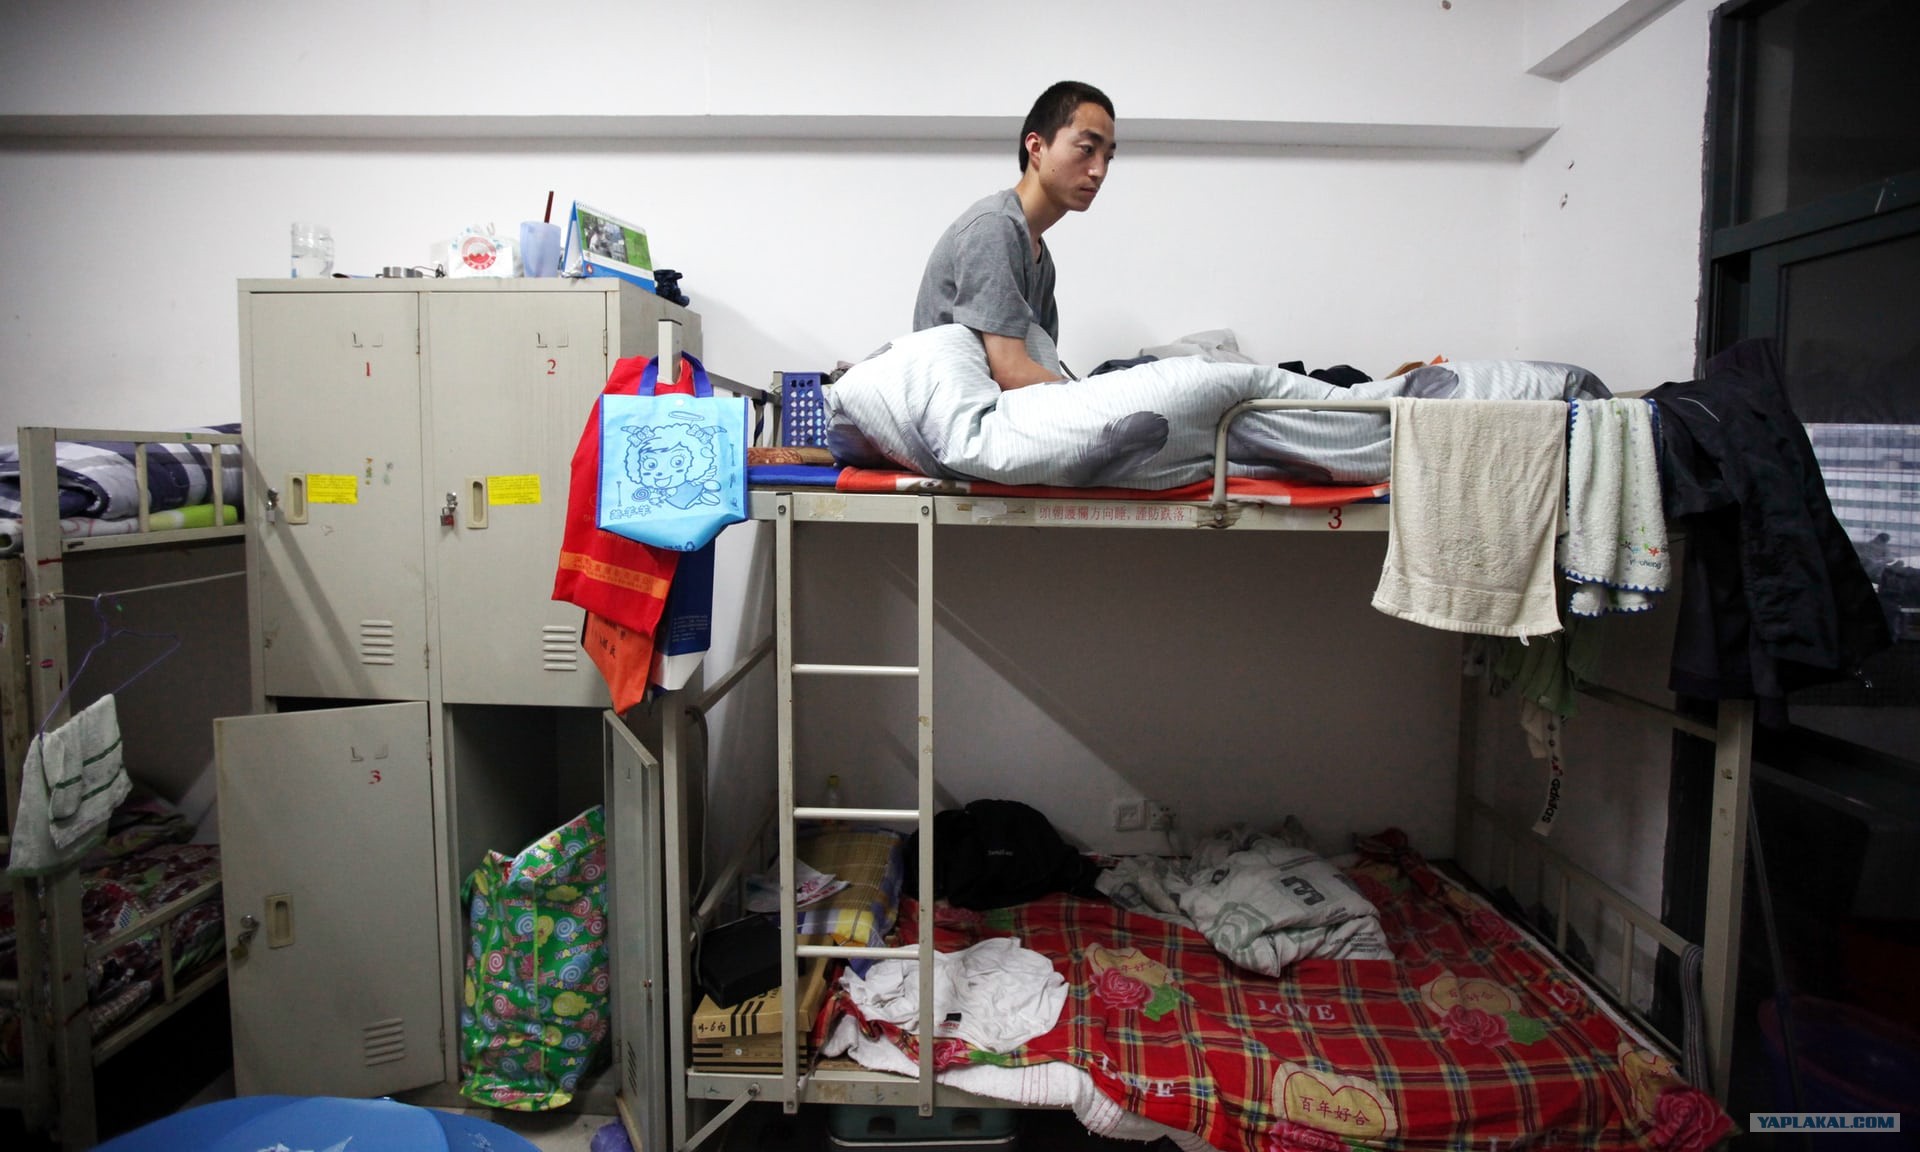 Люди живущие в общежитии. Комната в общежитии. Китайская общага. Общага для рабочих. Китайское общежитие.